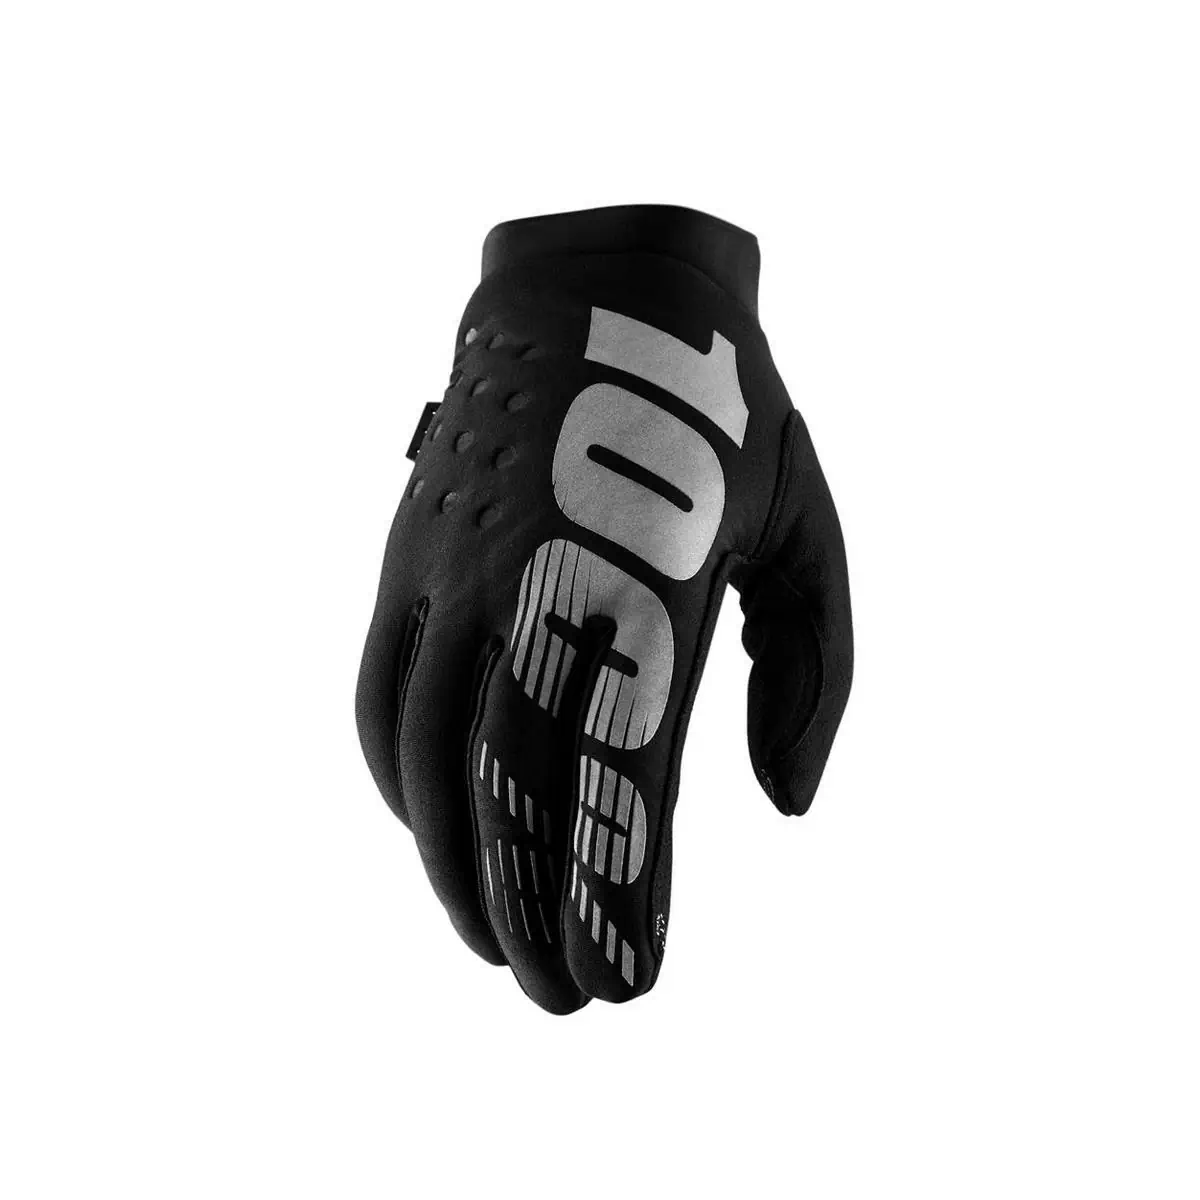 Winter gloves brisker black size M - image